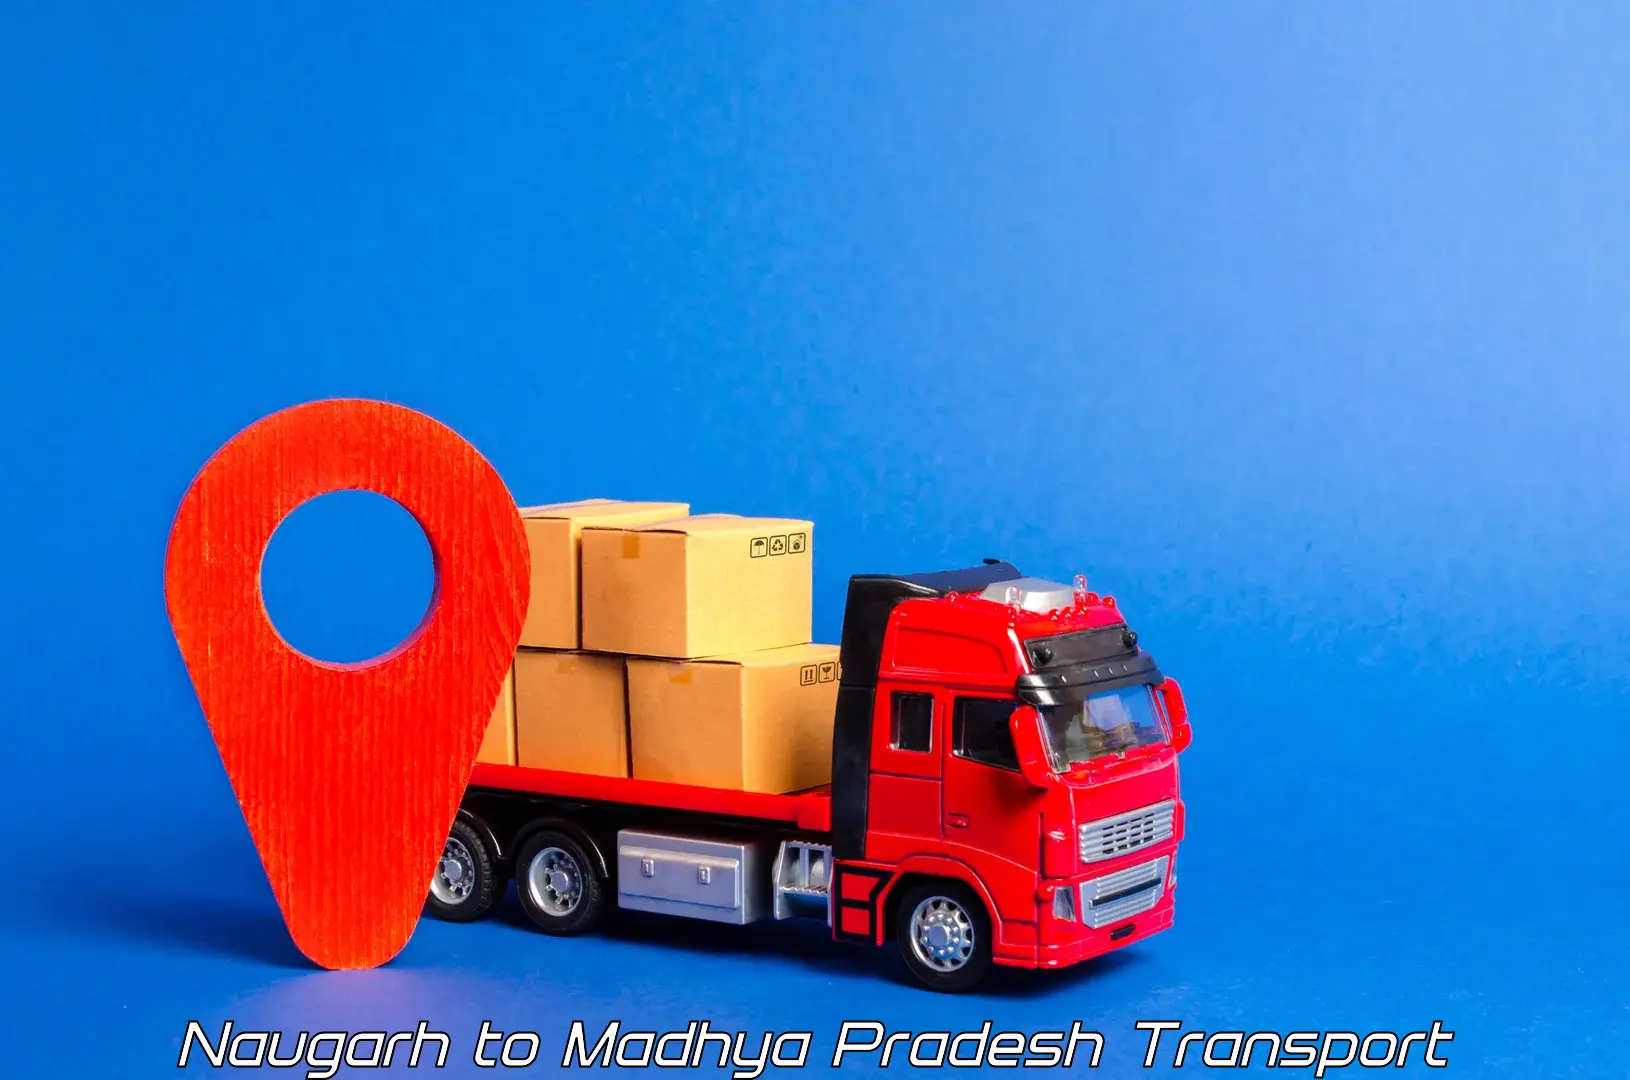 Interstate transport services Naugarh to Shahpura Dindori